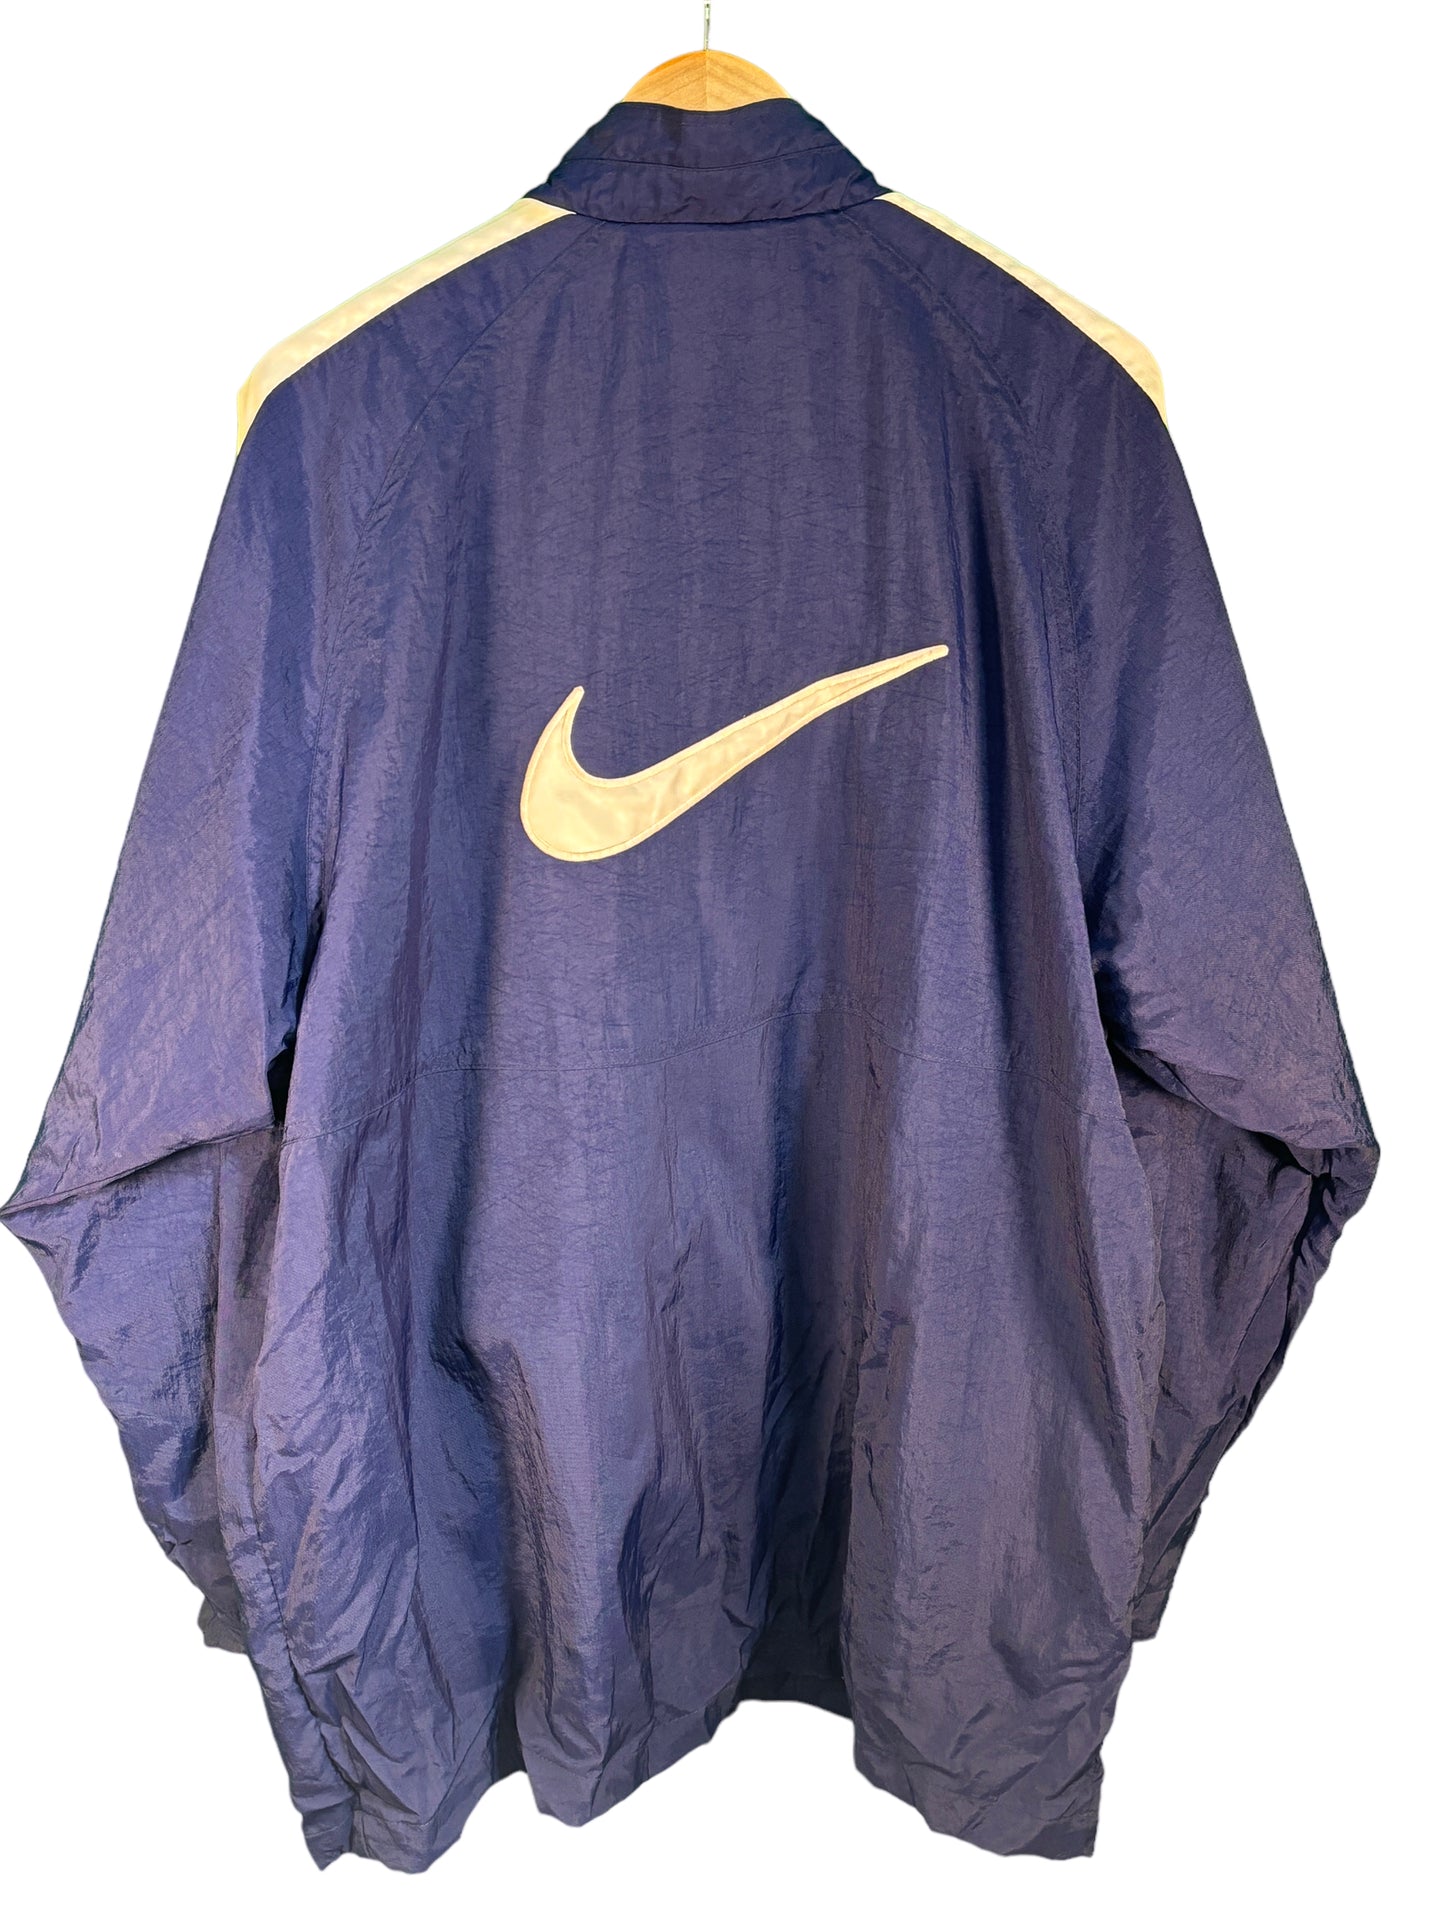 Vintage 90's Nike Navy Blue Big Swoosh Windbreaker Jacket Size Large